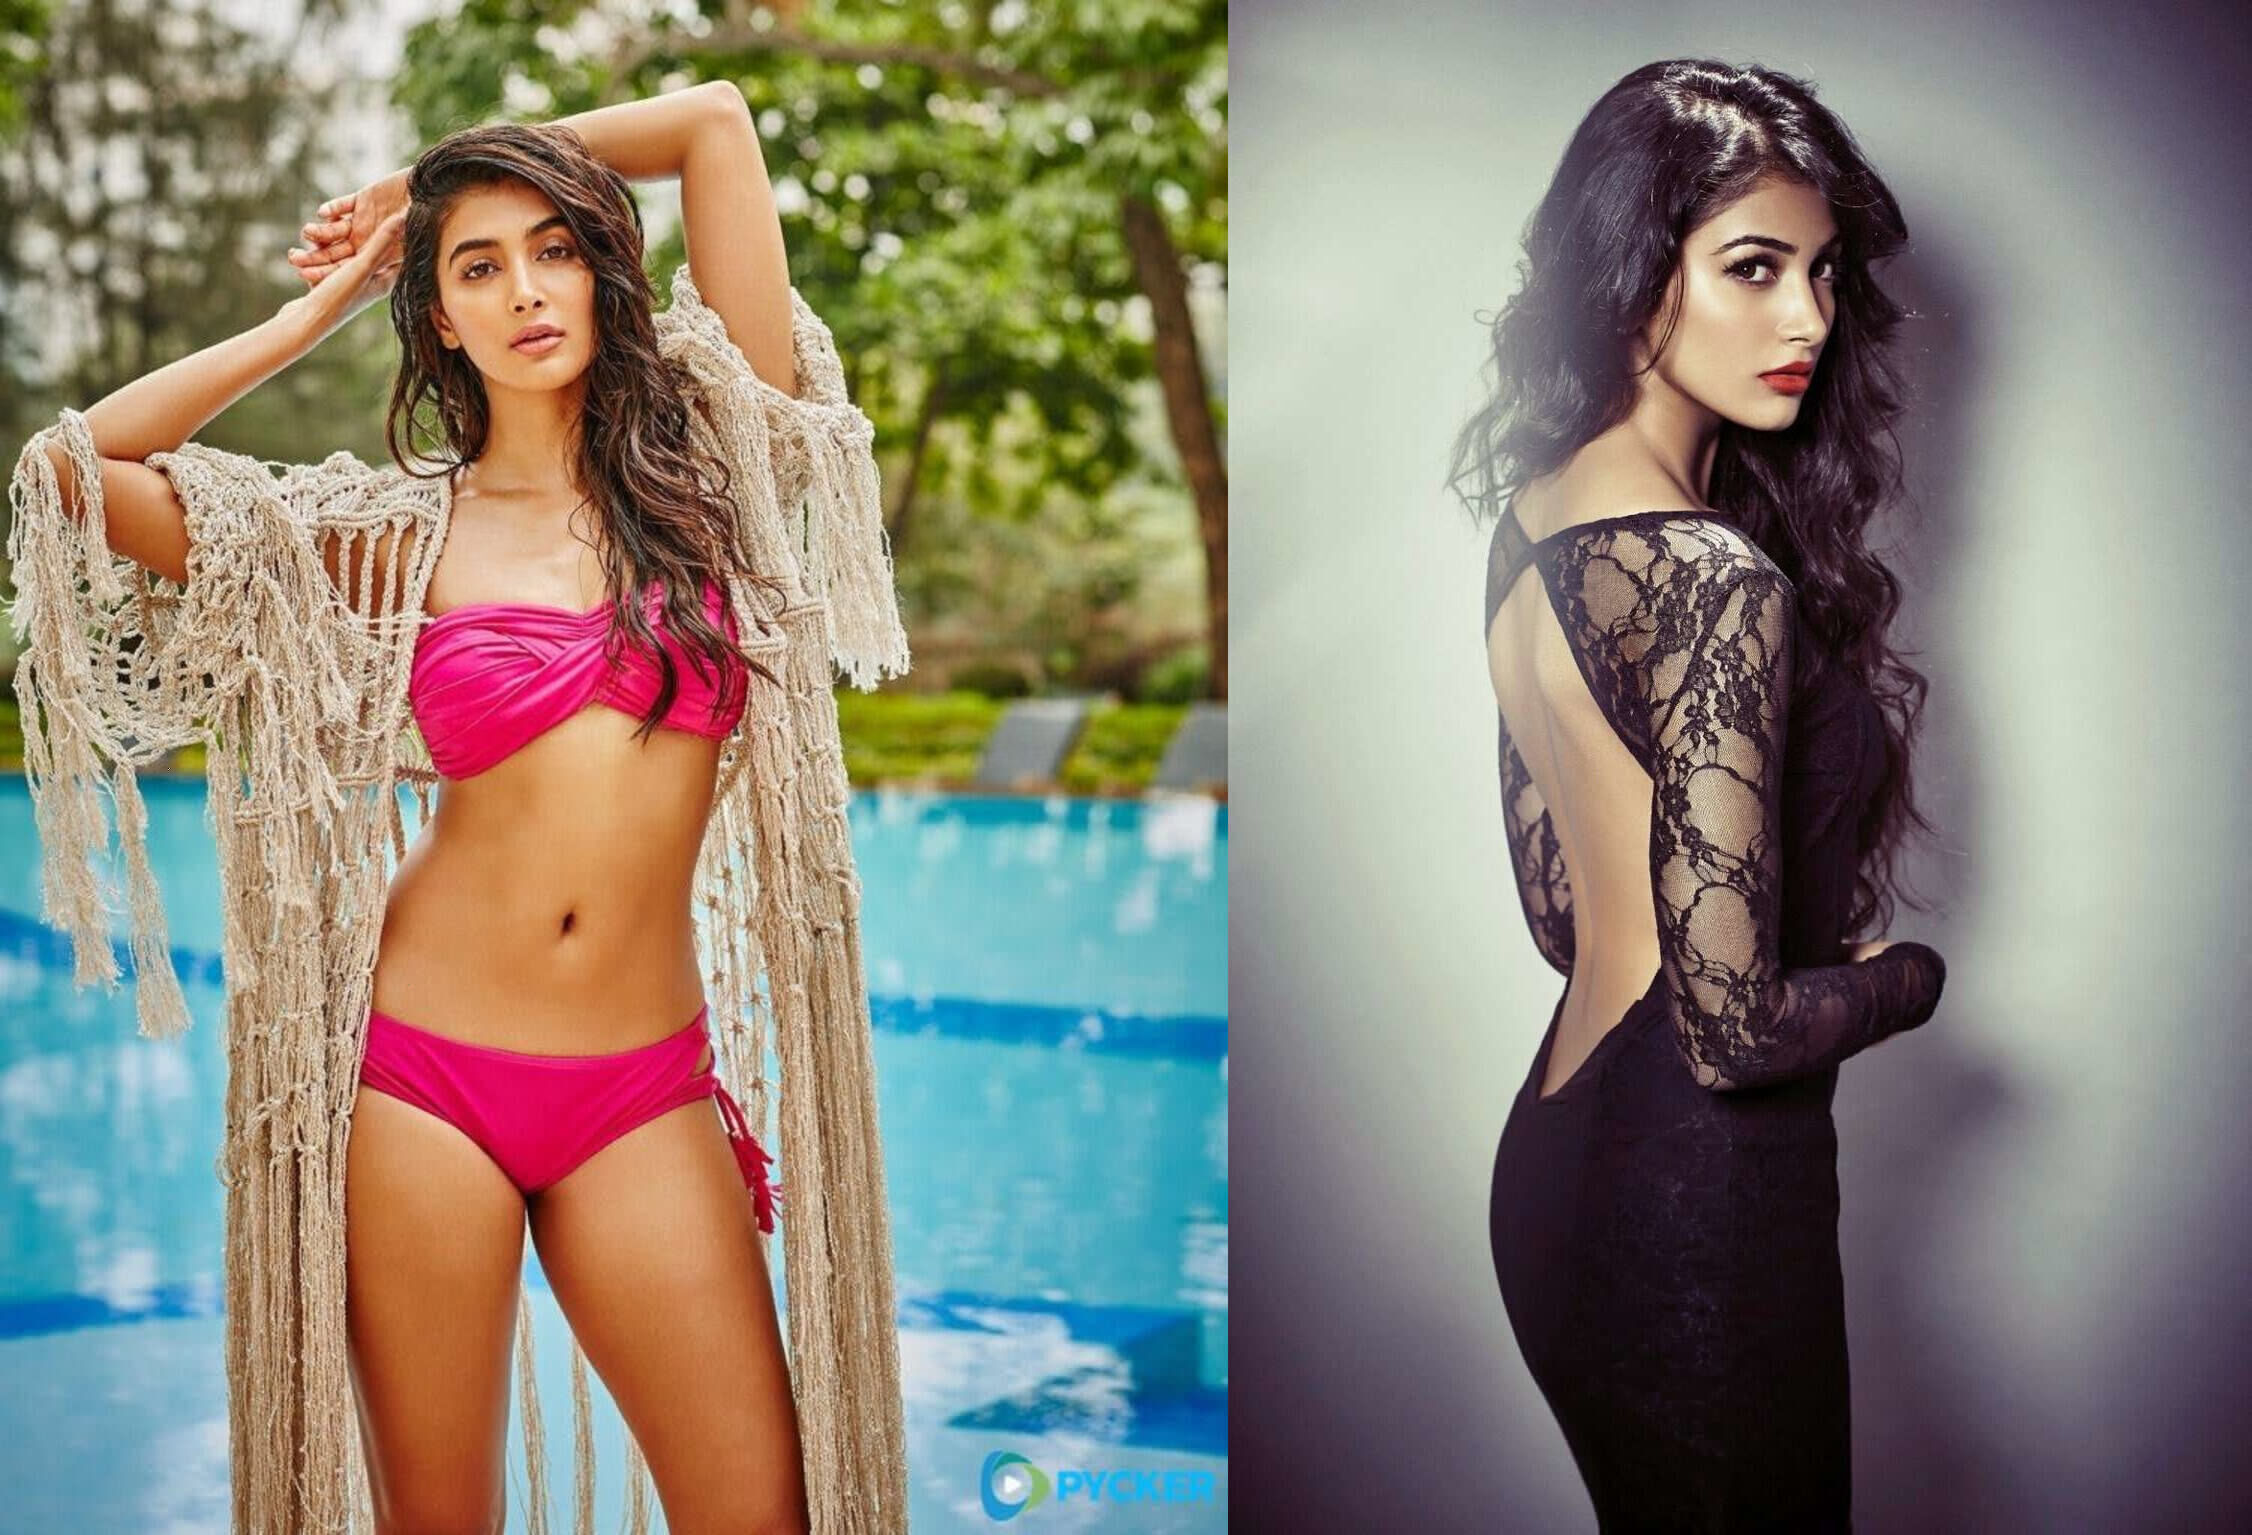 Pooja Hegde Sexy Hot Video पूजा हेगड़े के सेक्सी वीडियो ने फैंस को 